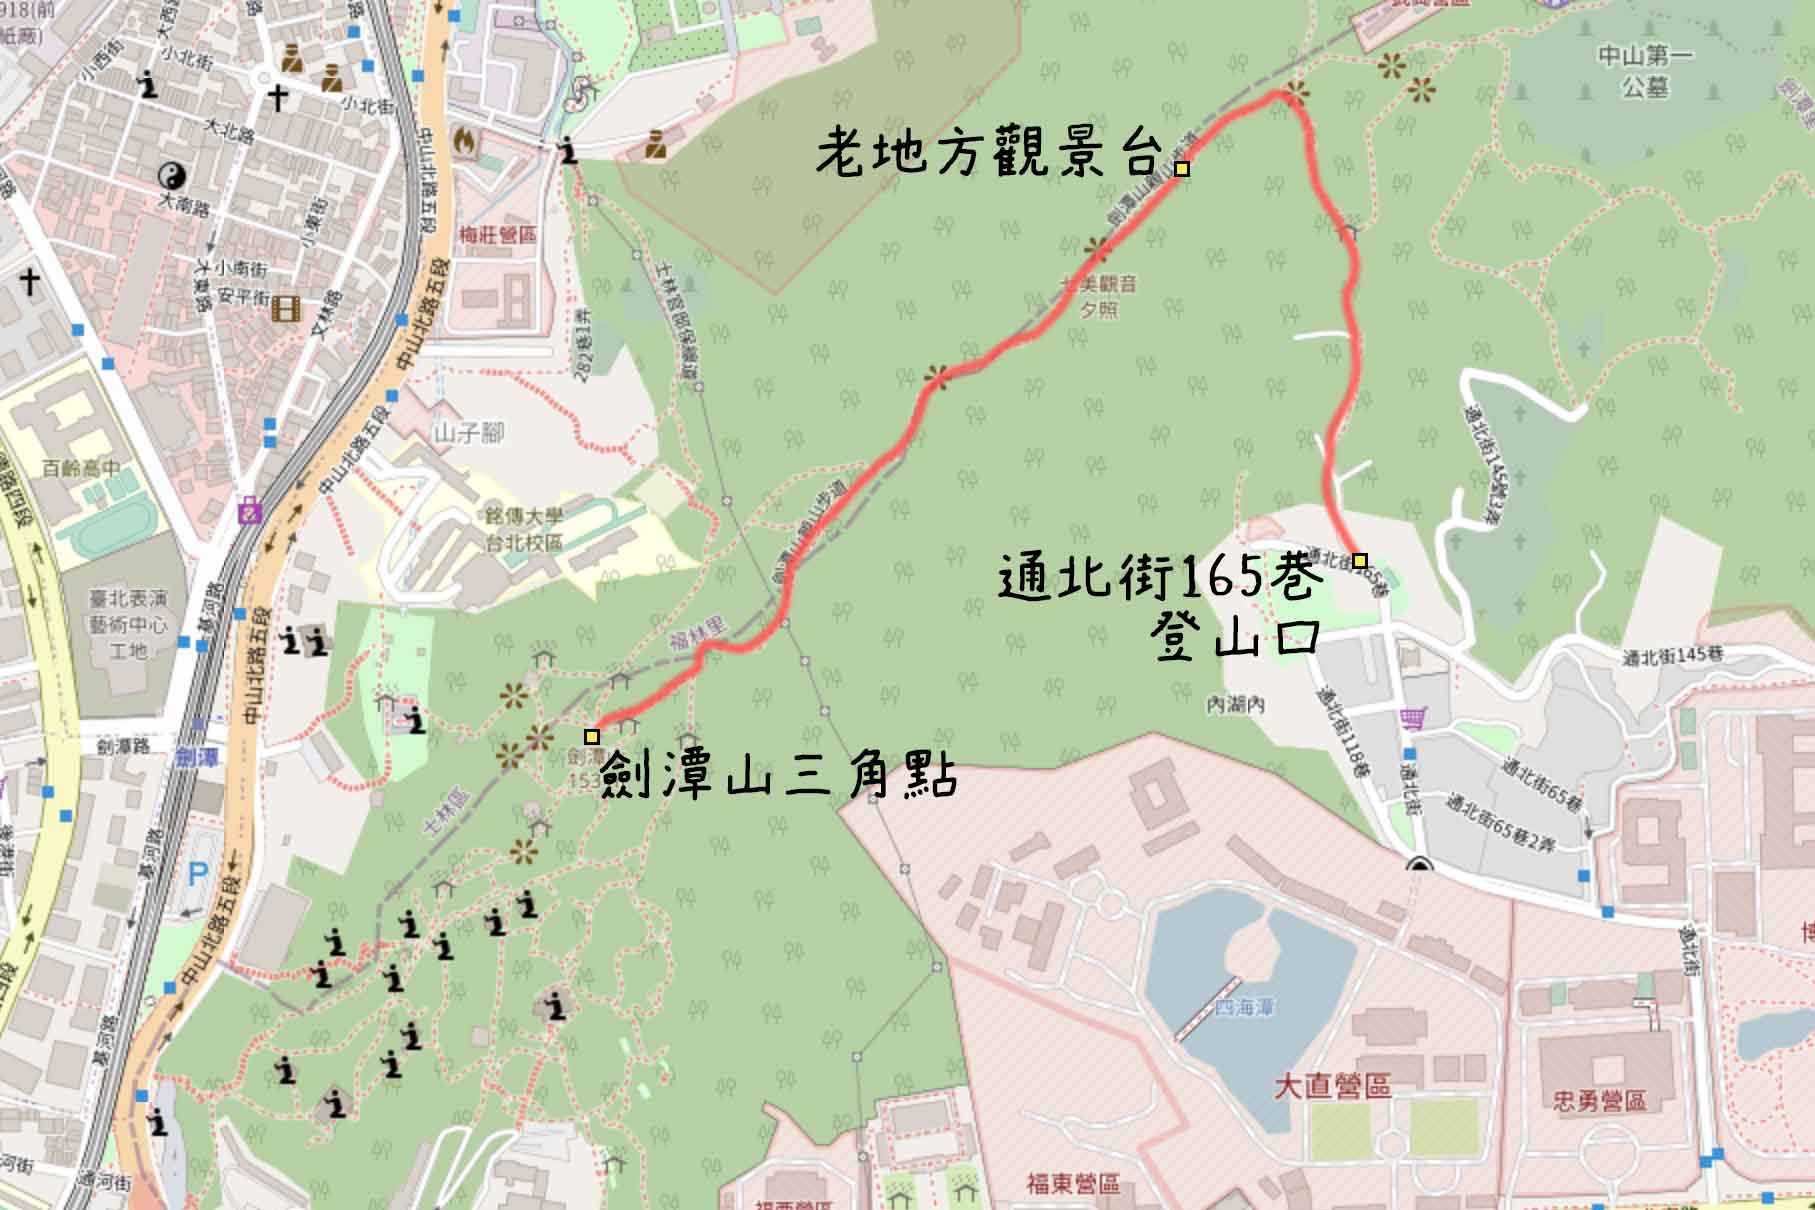 劍潭山步道路線圖